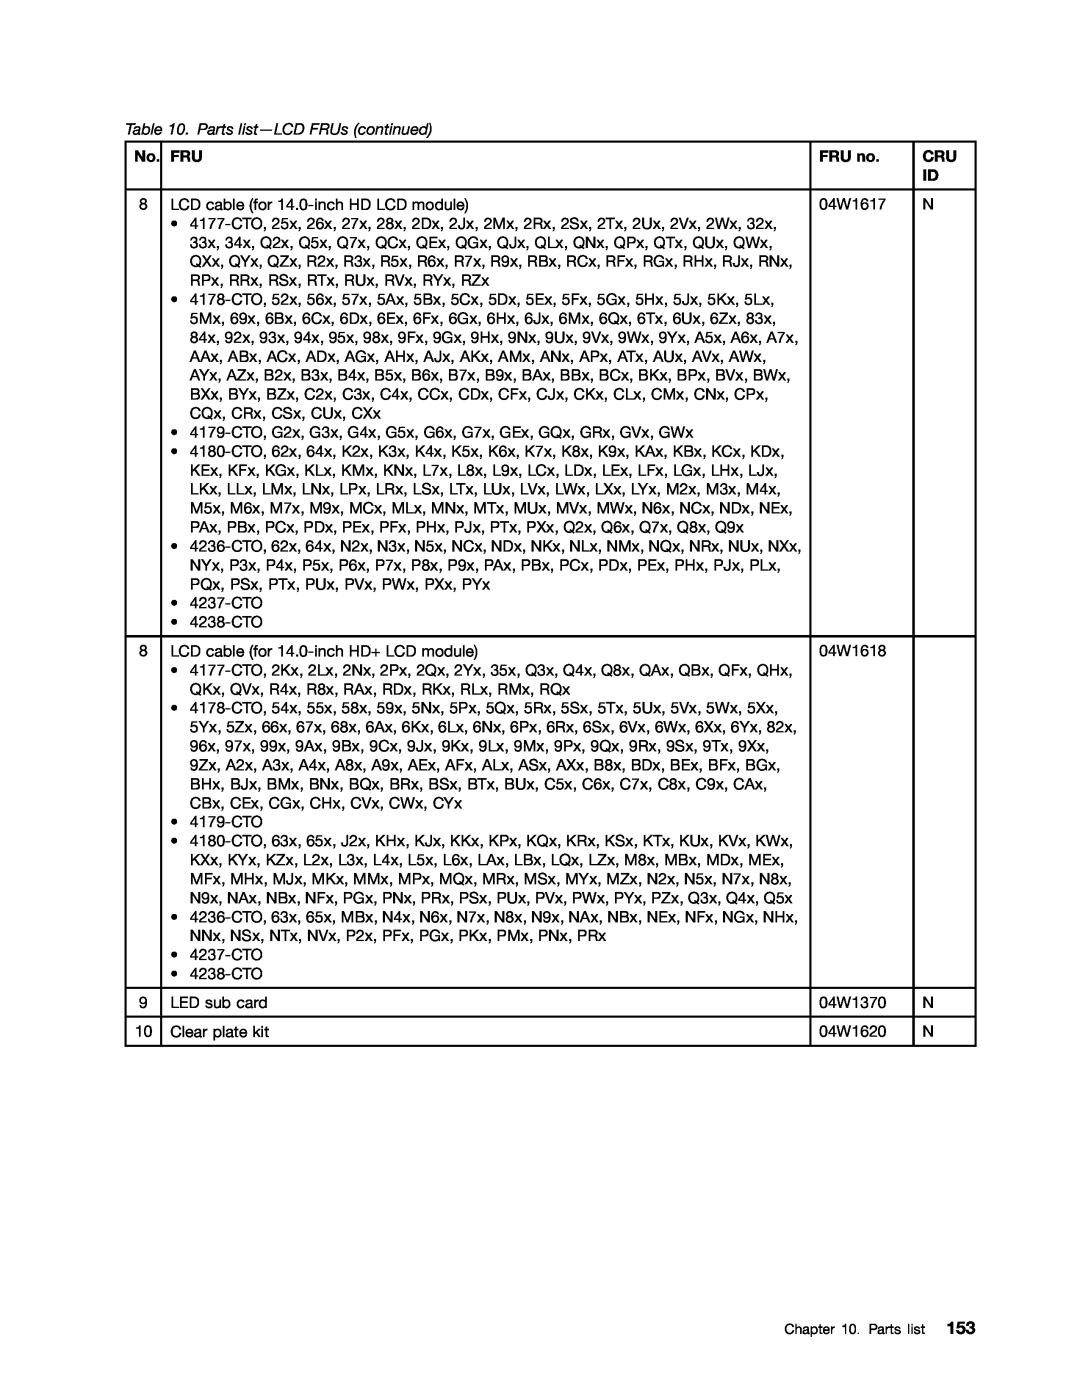 Lenovo T420i manual Parts list-LCD FRUs continued, FRU no 